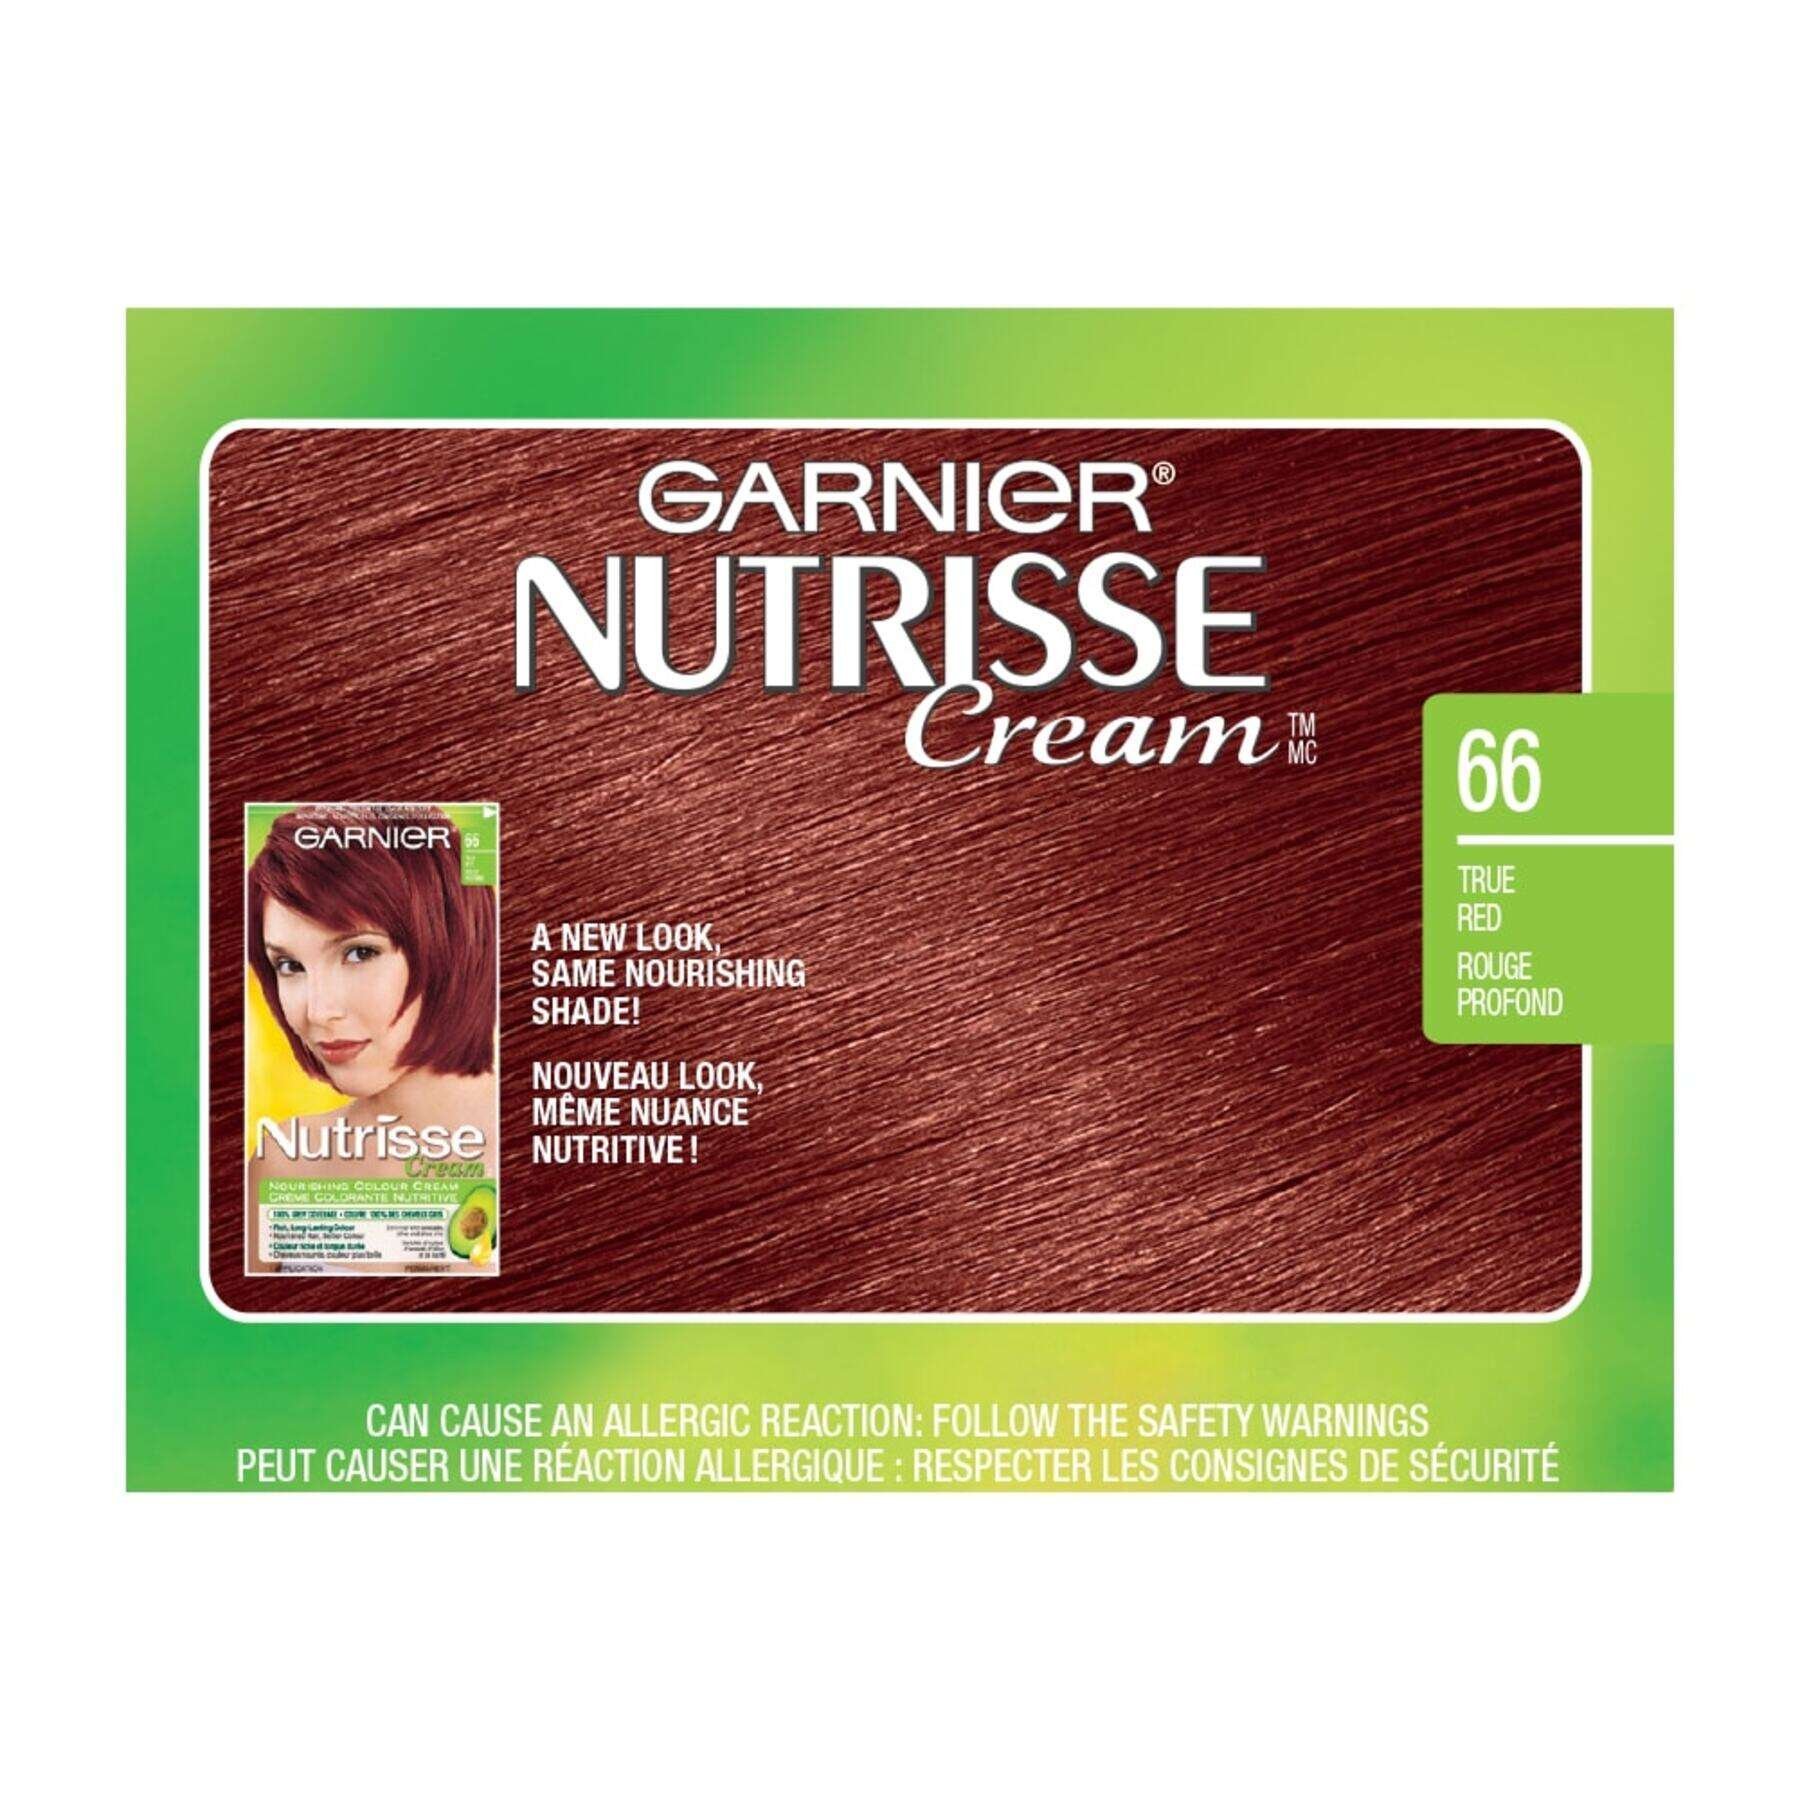 garnier hair dye nutrisse cream 66 true red 0770103447186 swatch